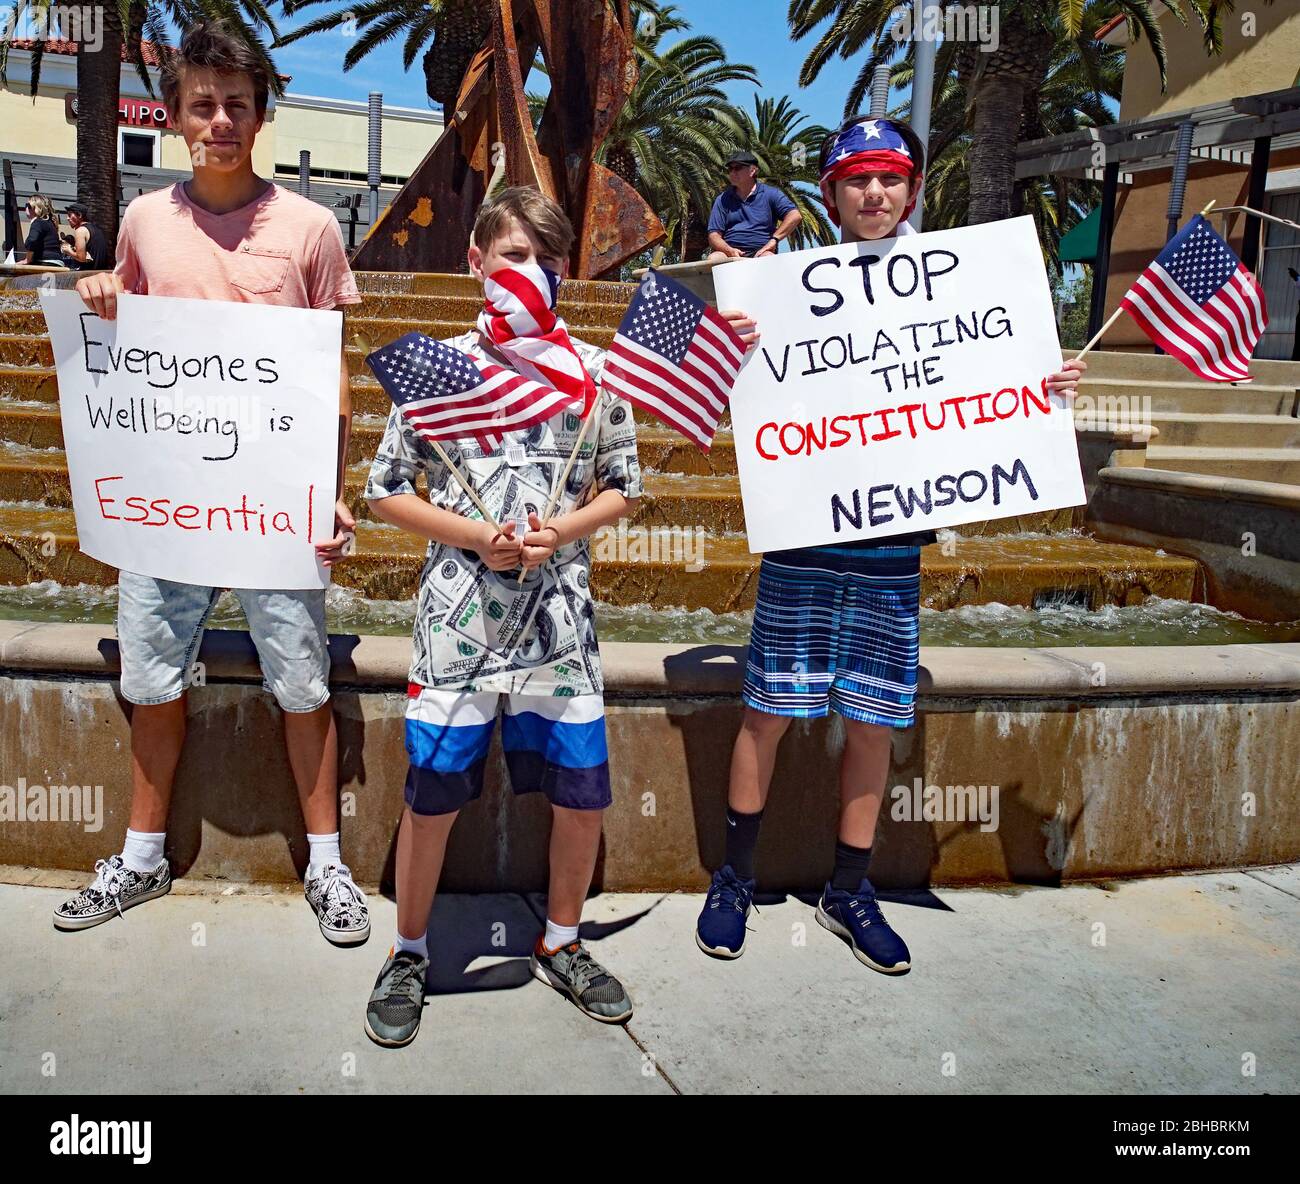 OpenUpCA Sants Ana, Californie, 24 avril 2020, les manifestants se rallient autour de la périphérie de Santa Ana, agitant des drapeaux américains exigeant la réouverture de la californie, vont au travail. Banque D'Images